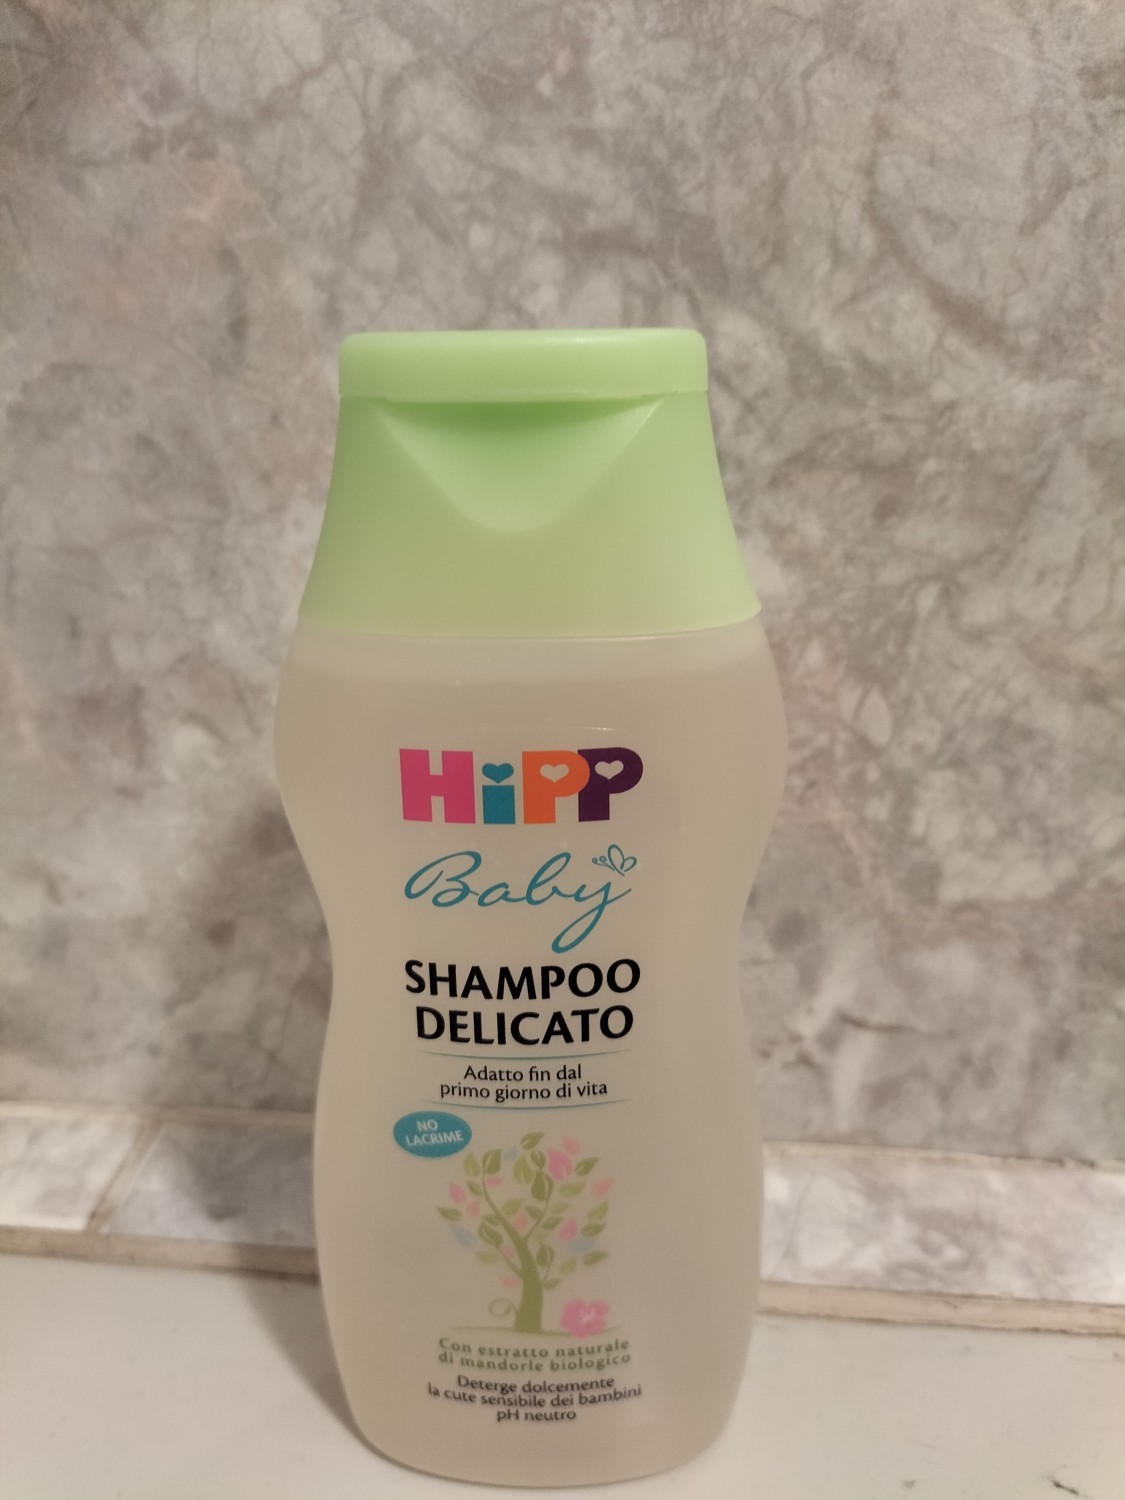 Foto shampoo Hipp baby